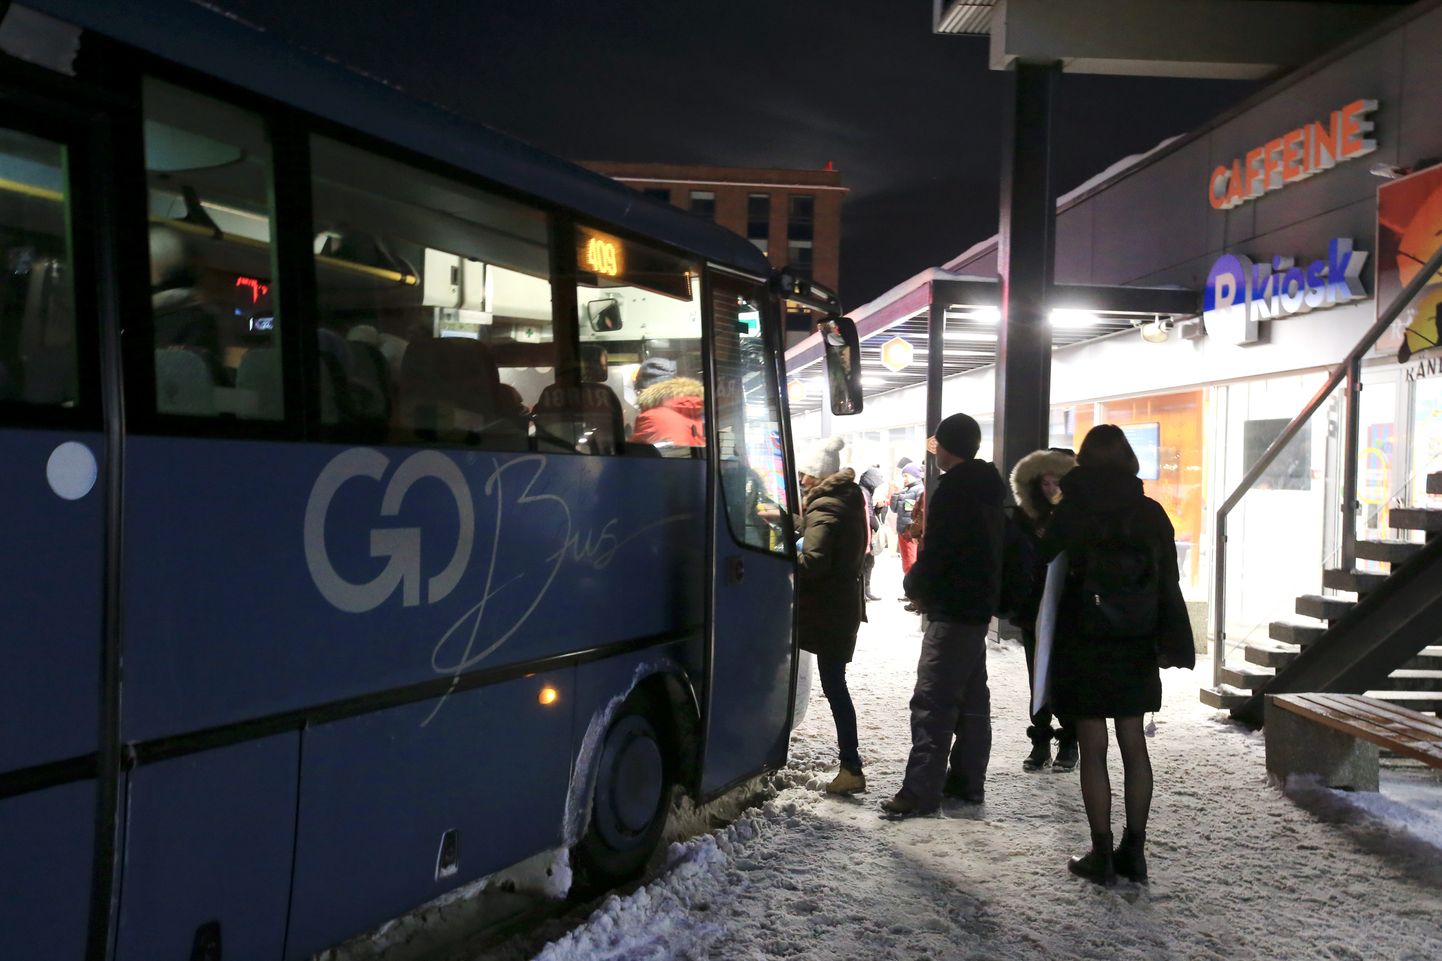 Neljapäeva õhtul väljusid Tartu bussijaamast masinad tavapäraselt, kuid Õvanurme poole reisijail tasub olla tavalisest ettevaatlikum, sest ringi liigub väidetav ahistaja.